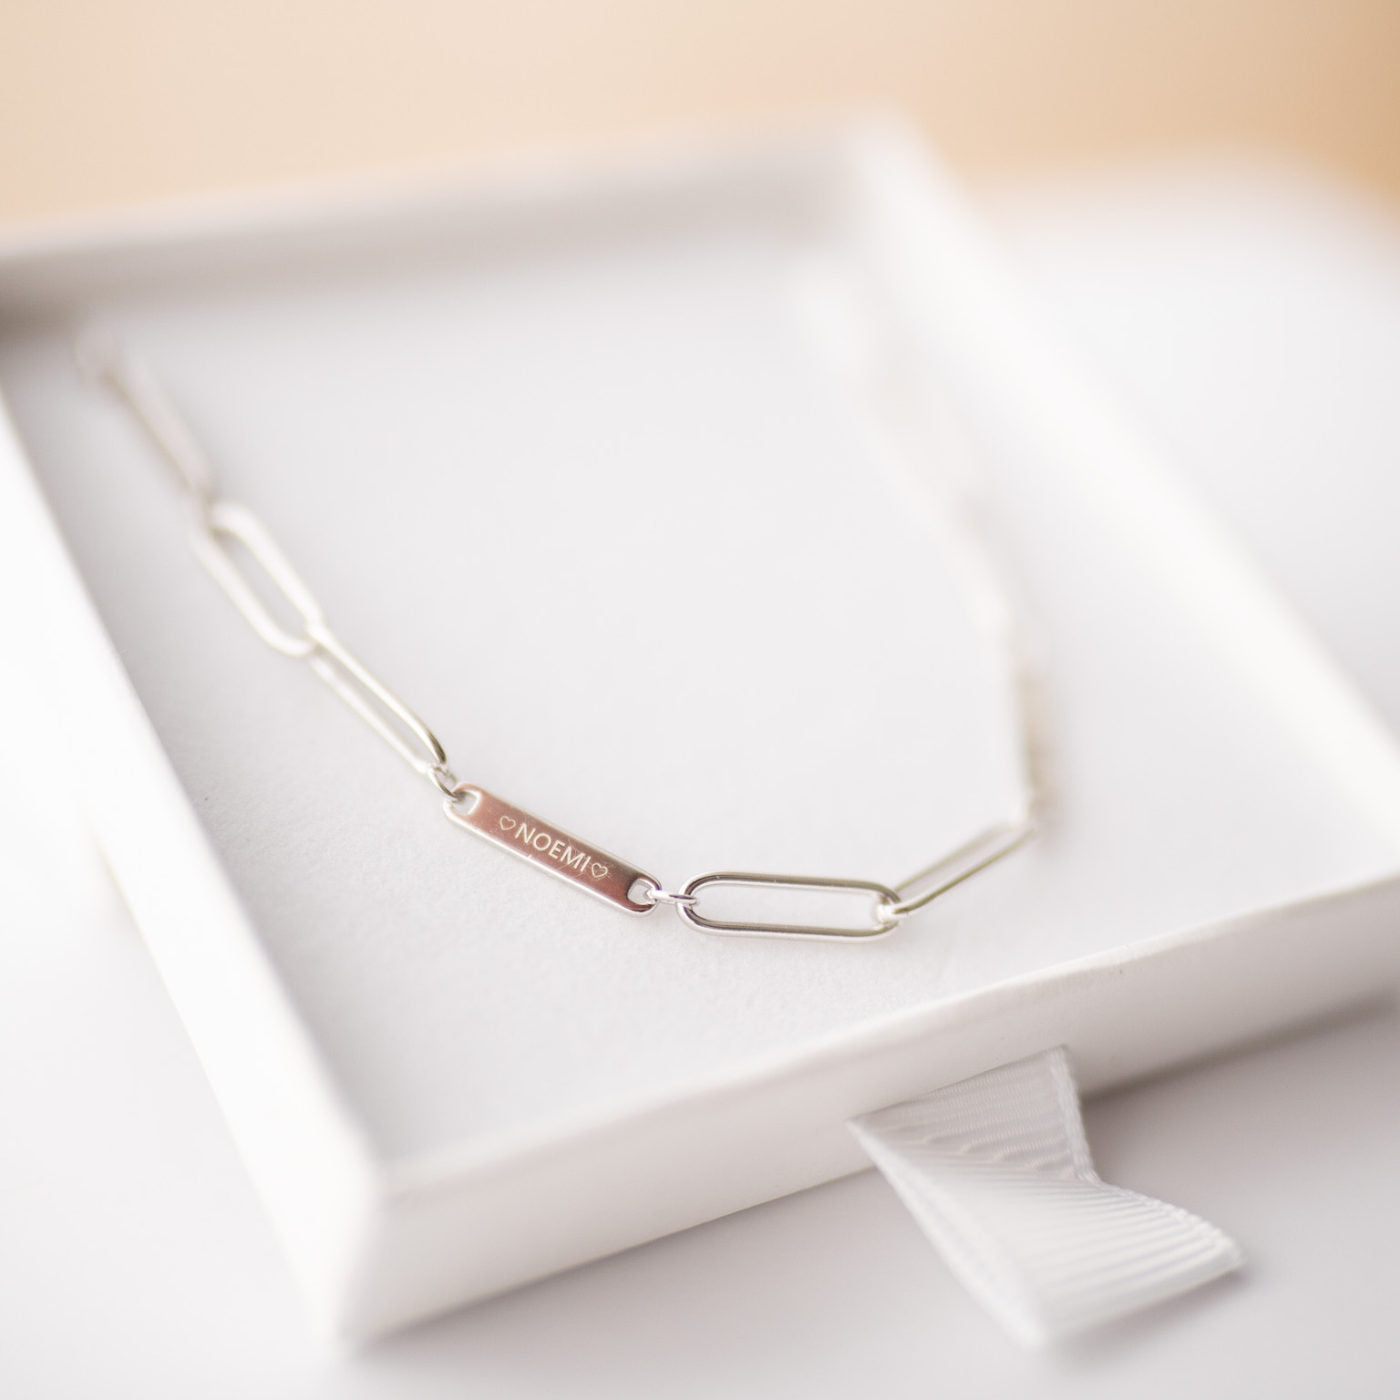 Family Chain Necklace Silver | Kette für €64.99 von So Loved Manufacture